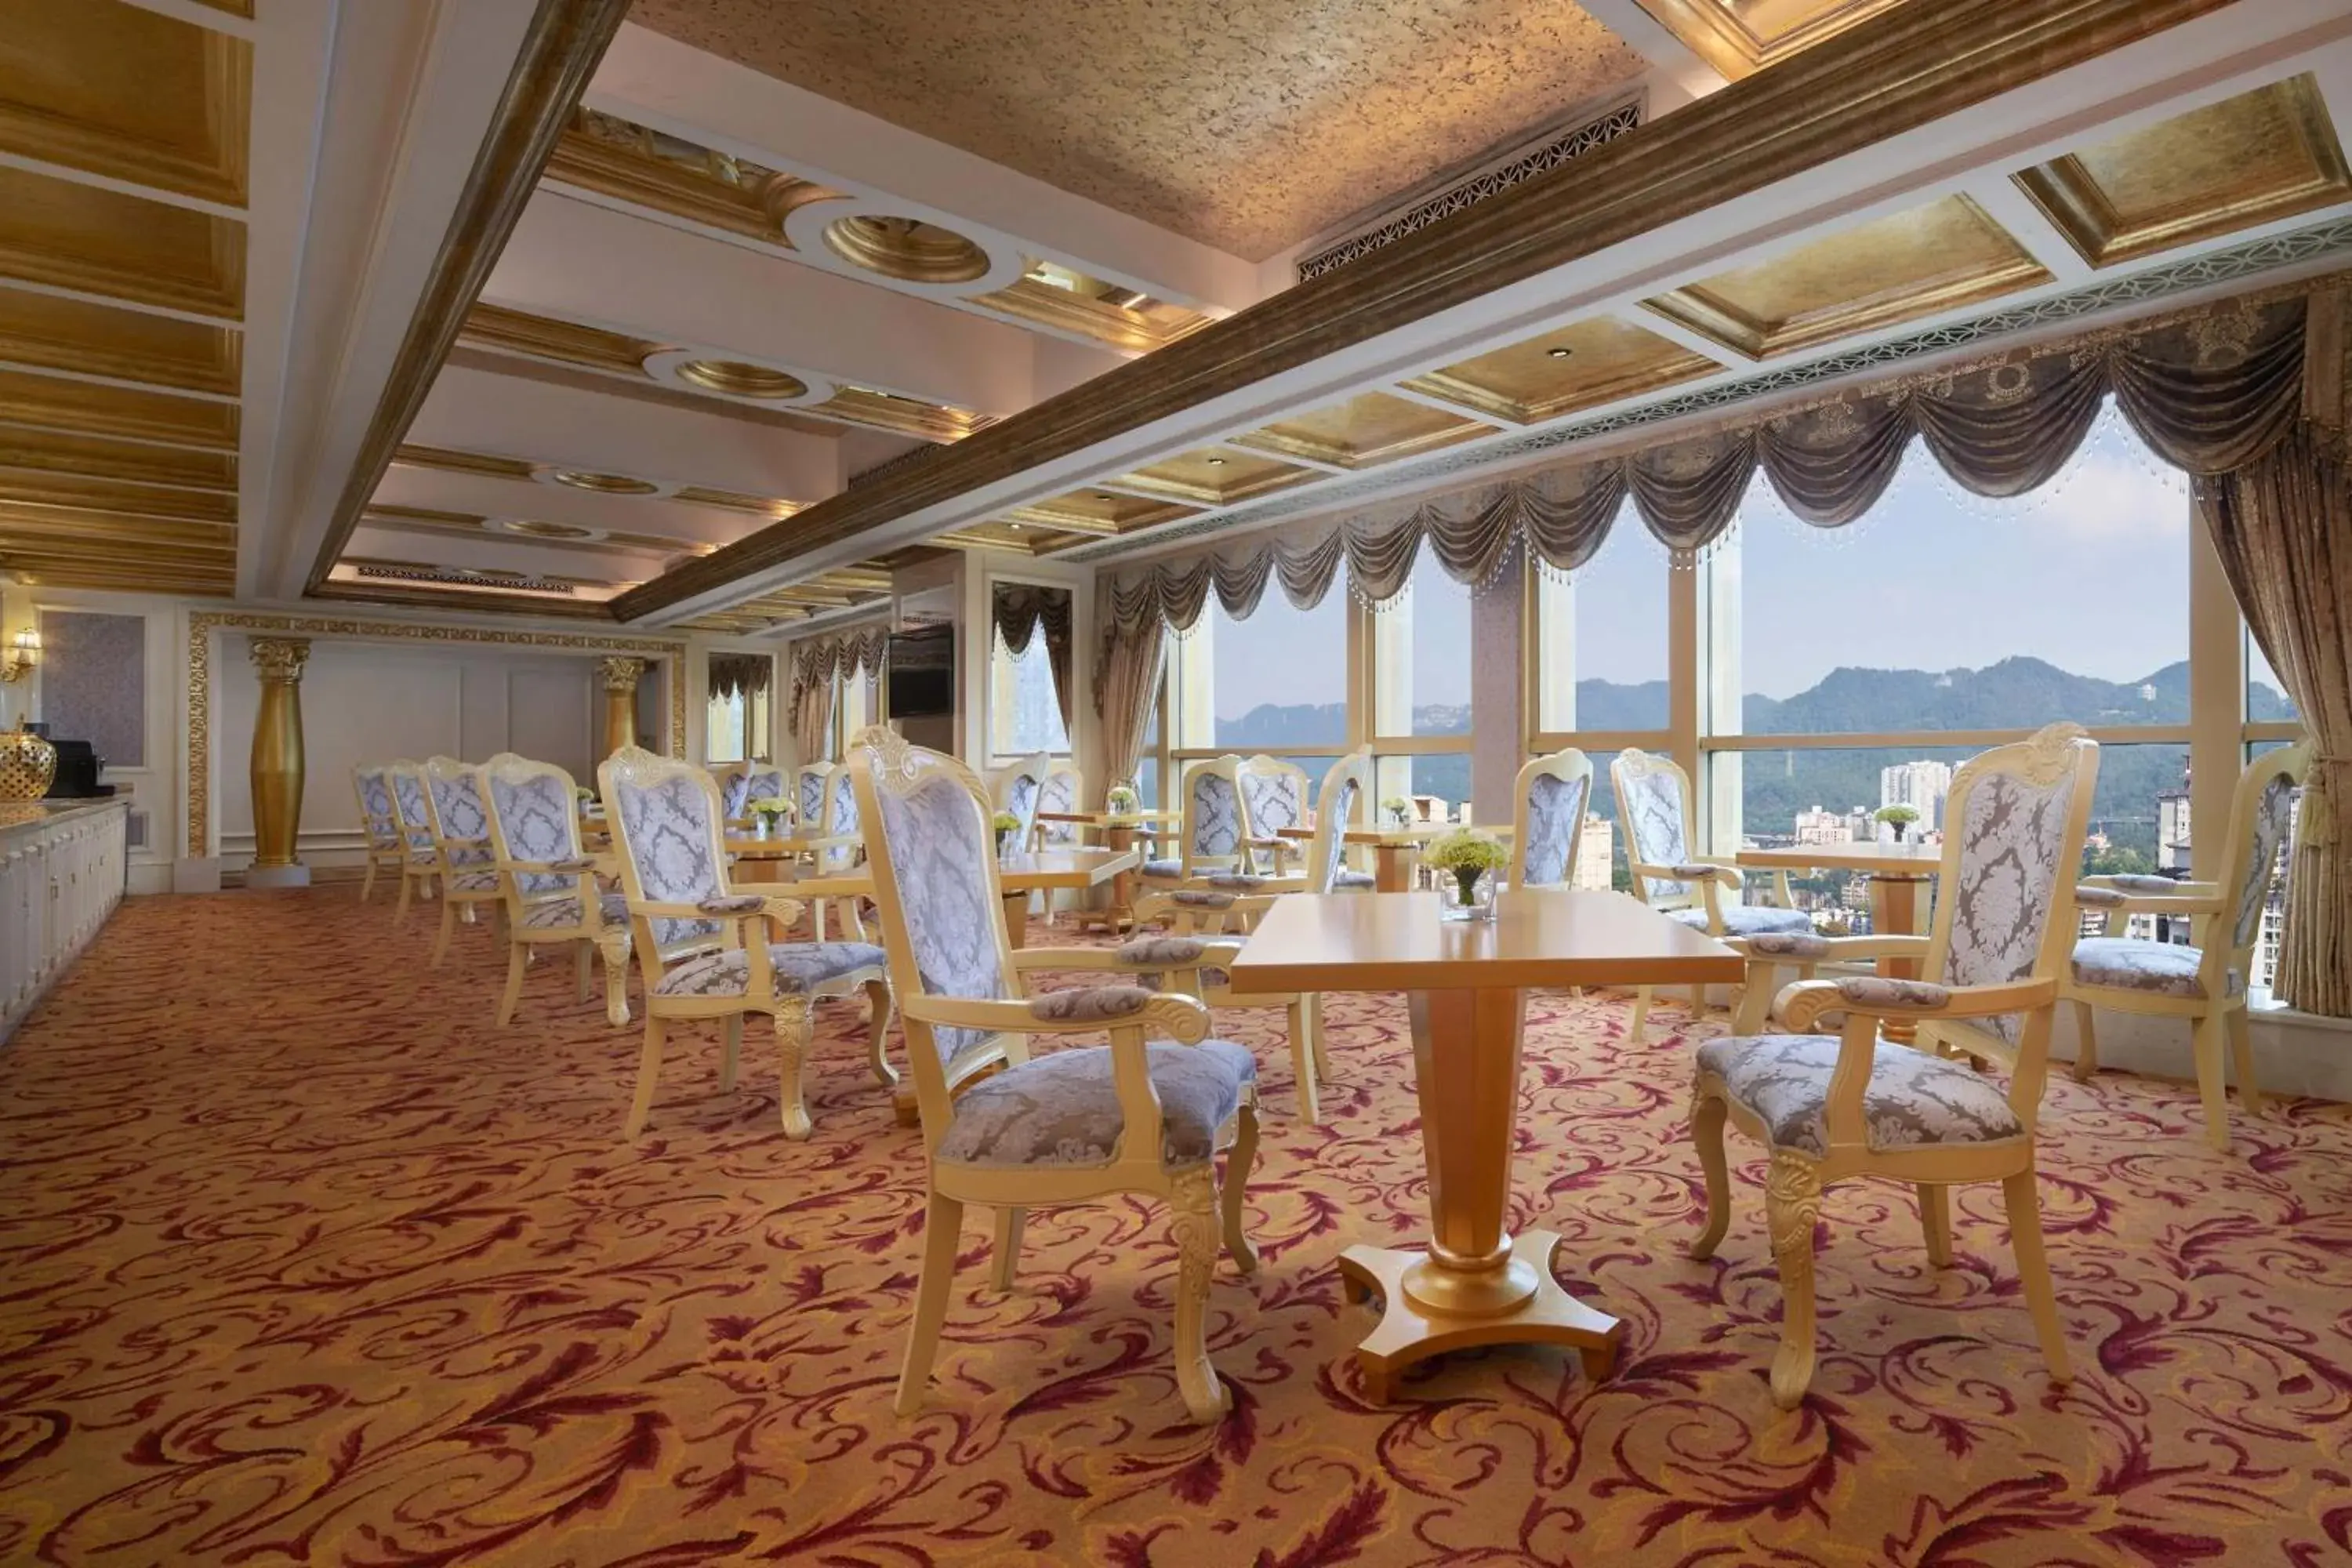 Lounge or bar, Banquet Facilities in Sheraton Chongqing Hotel